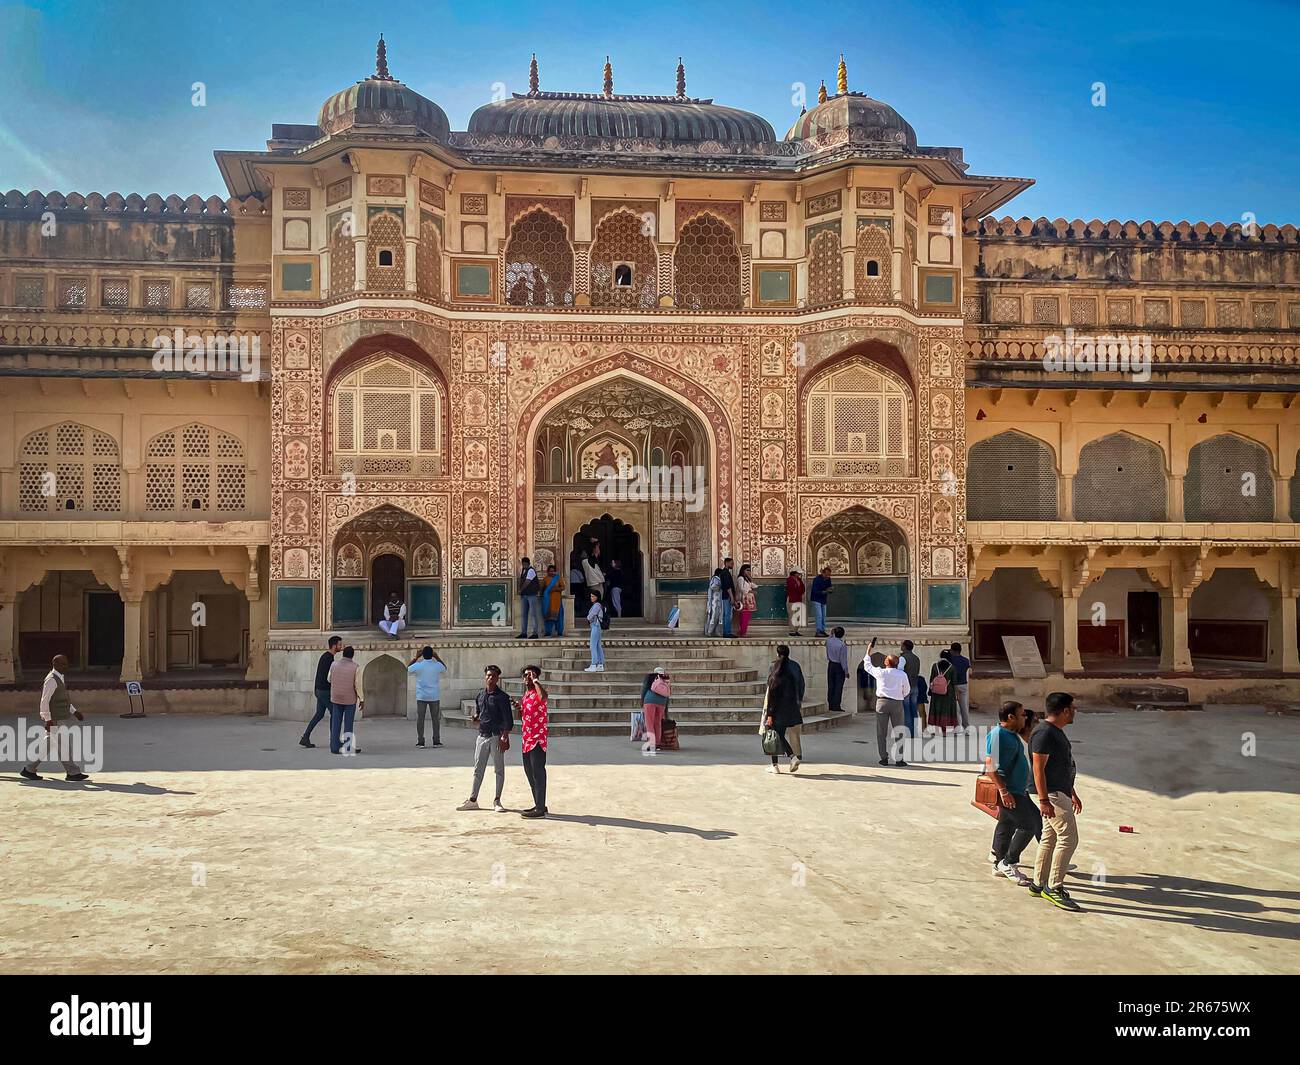 El famoso Fuerte Amber, la residencia fortificada de Raja Man Singh I en los suburbios del norte de Jaipur, India. Foto de stock